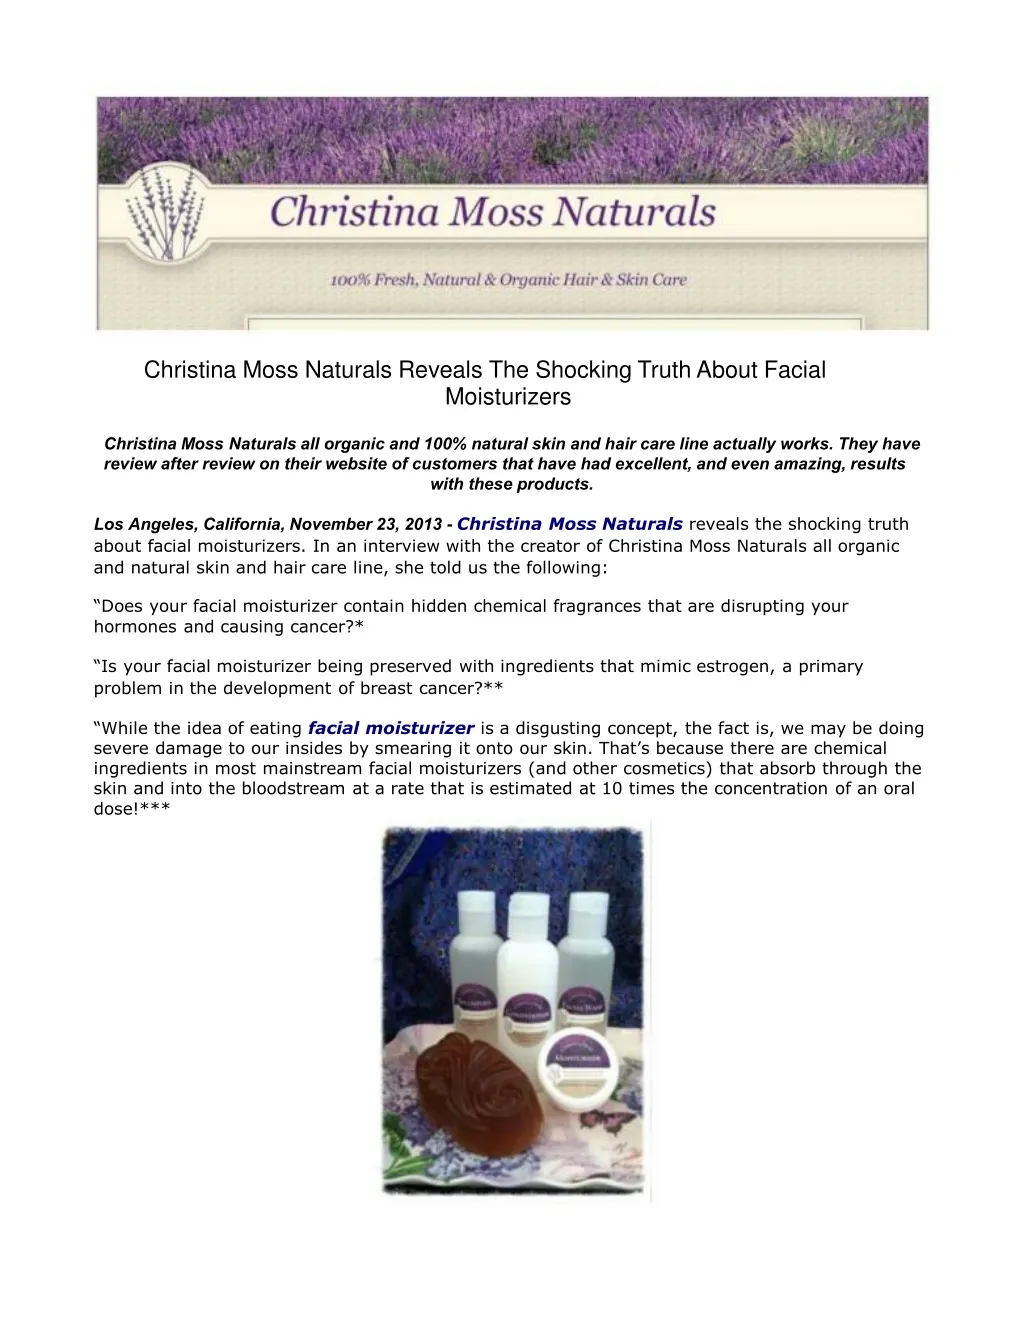 christina moss naturals reveals the shocking